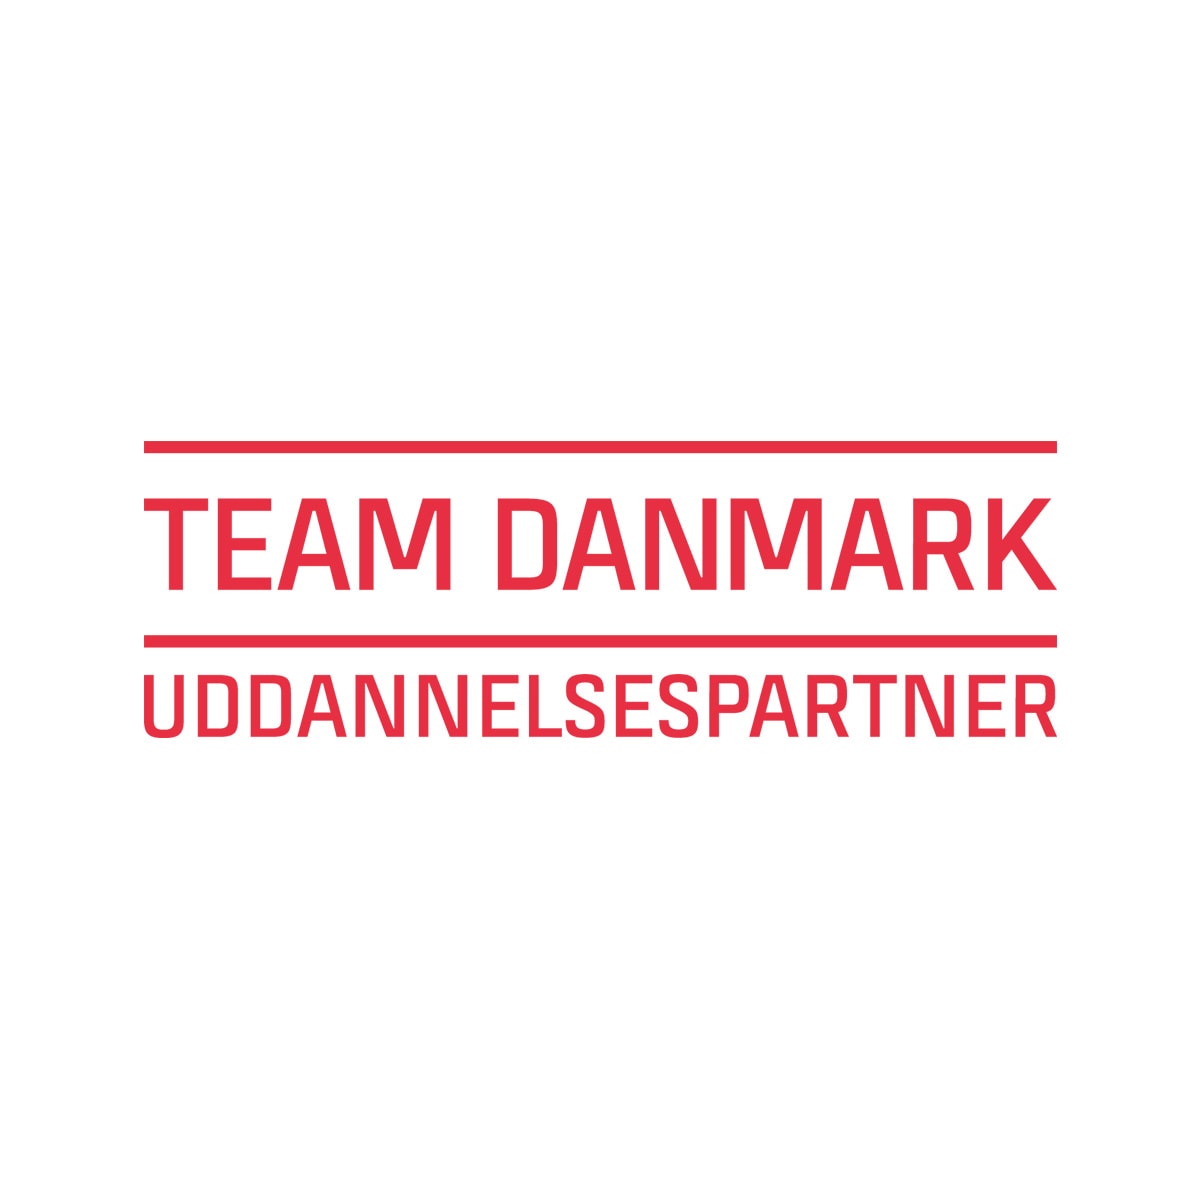 TeamDanmarkUddannelsesPartner_hhx2022